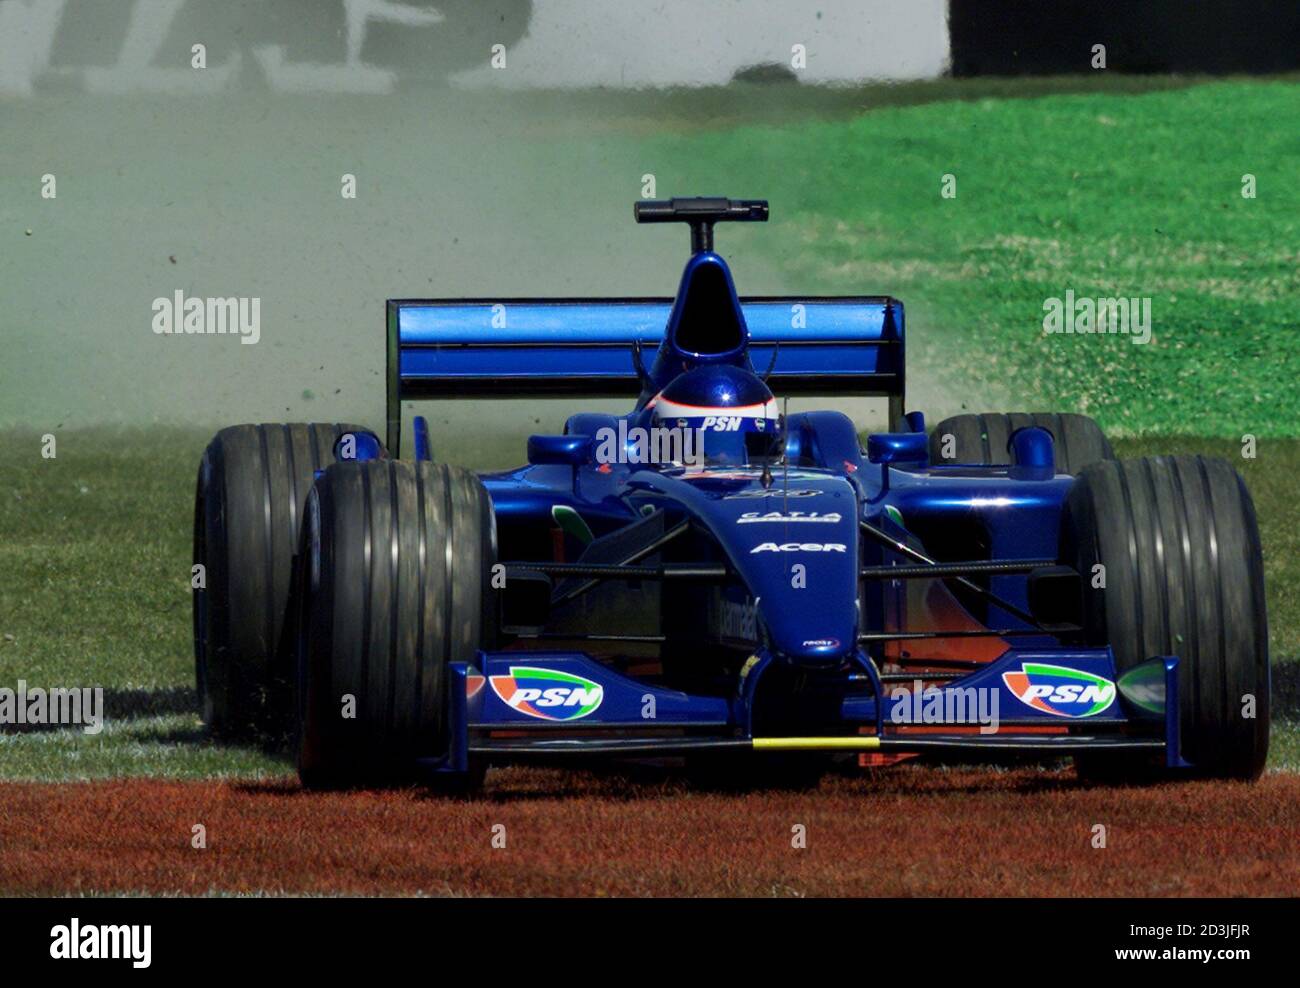 PROST-PILOT GASTON MAZZACANE IN AKTION BEIM ERSTEN TRAINING FÜR DEN AUSTRALIAN GRAND PRIX IN MELBOURNE. Gaston Mazzacane aus Argentinien von Prost fährt beim ersten Training für den Australian Formel 1 Grand Prix in Melbourne am 2. März 2001 über das Gras. Ferrari's Rubens Barrichello verzeichnete die schnellste Zeit mit Teamkollege und Titelverteidiger Michael Schumacher auf dem dritten Platz. Stockfoto